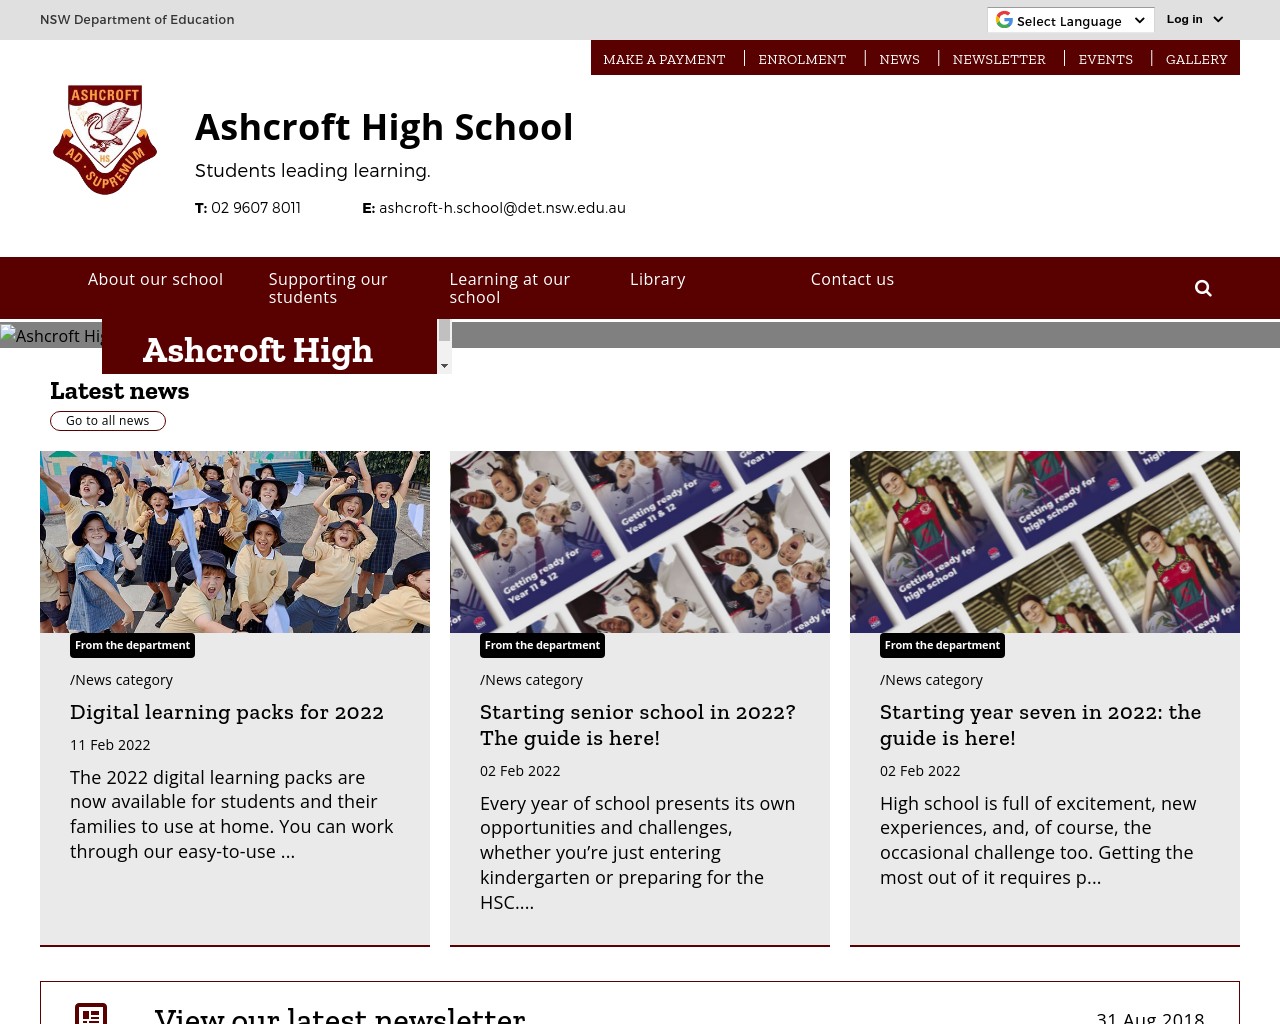 Ashcroft High School